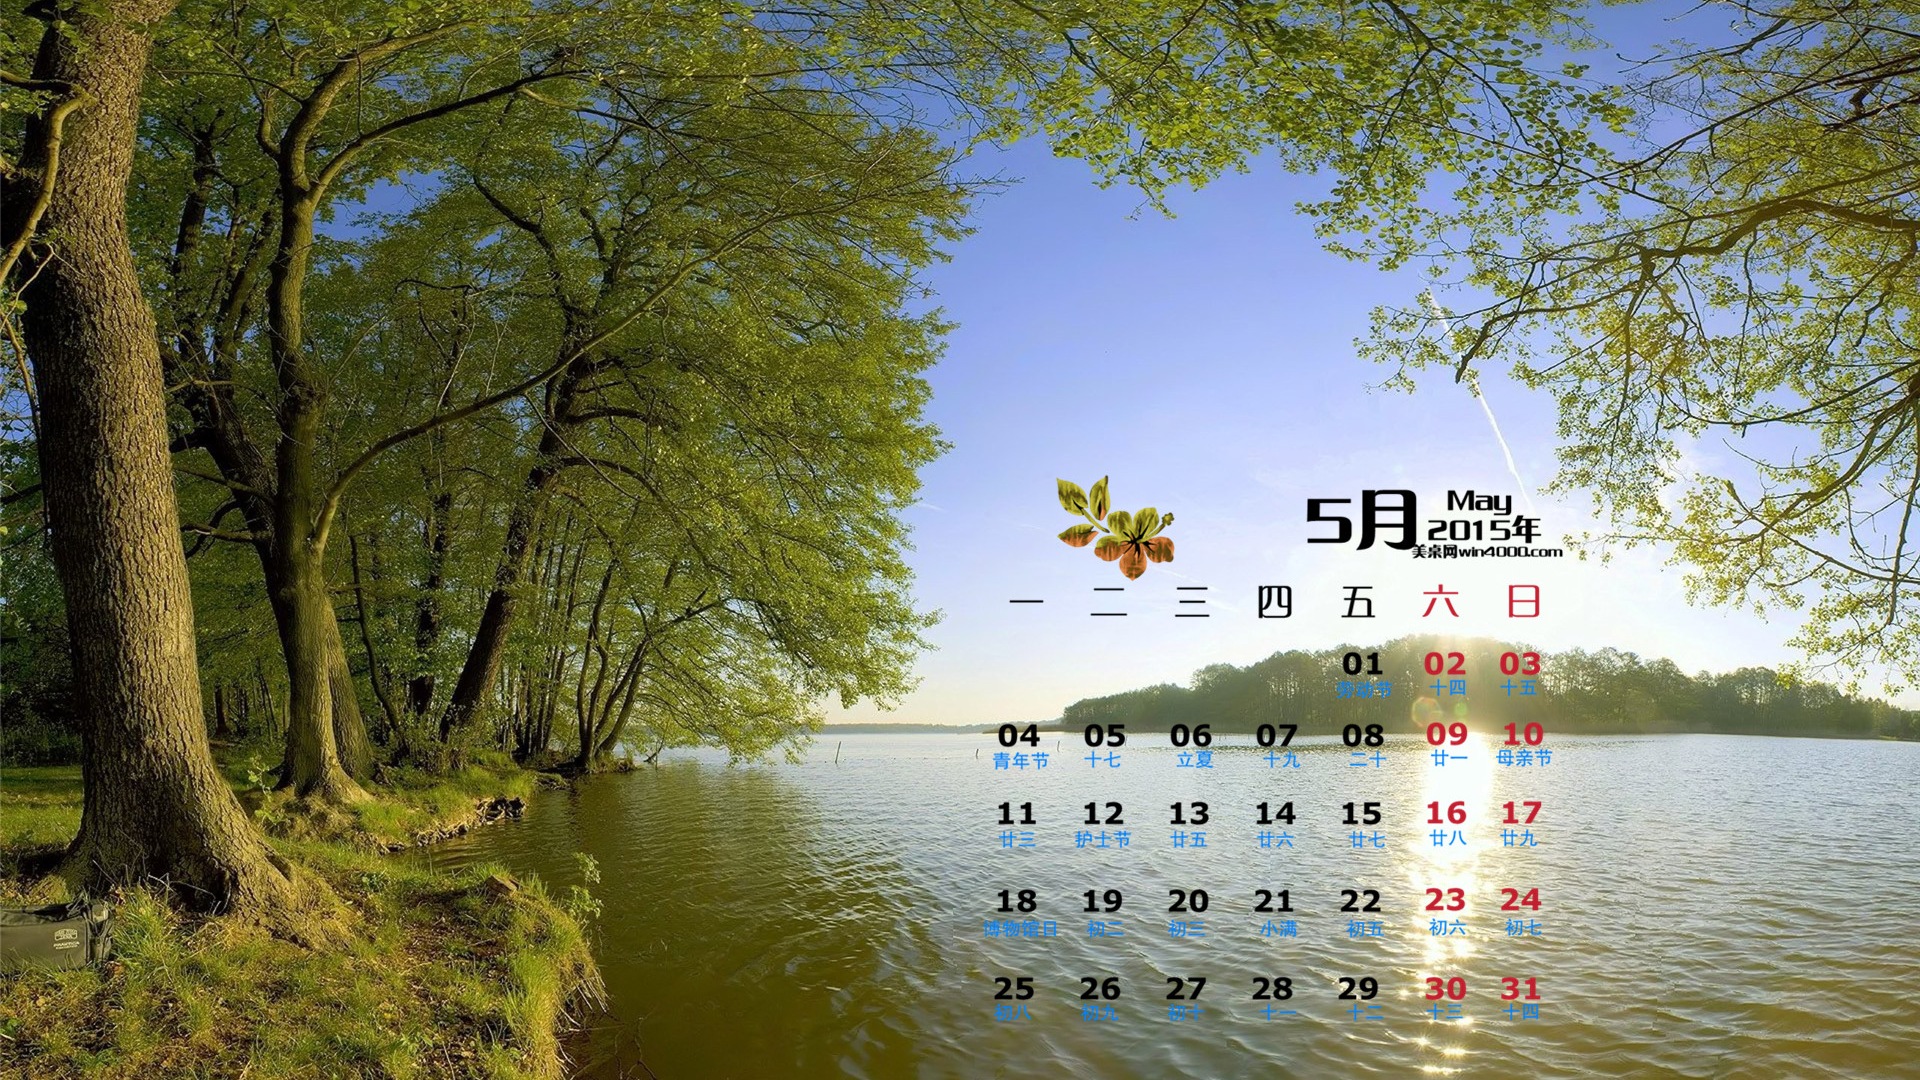 05. 2015 kalendář tapety (1) #4 - 1920x1080